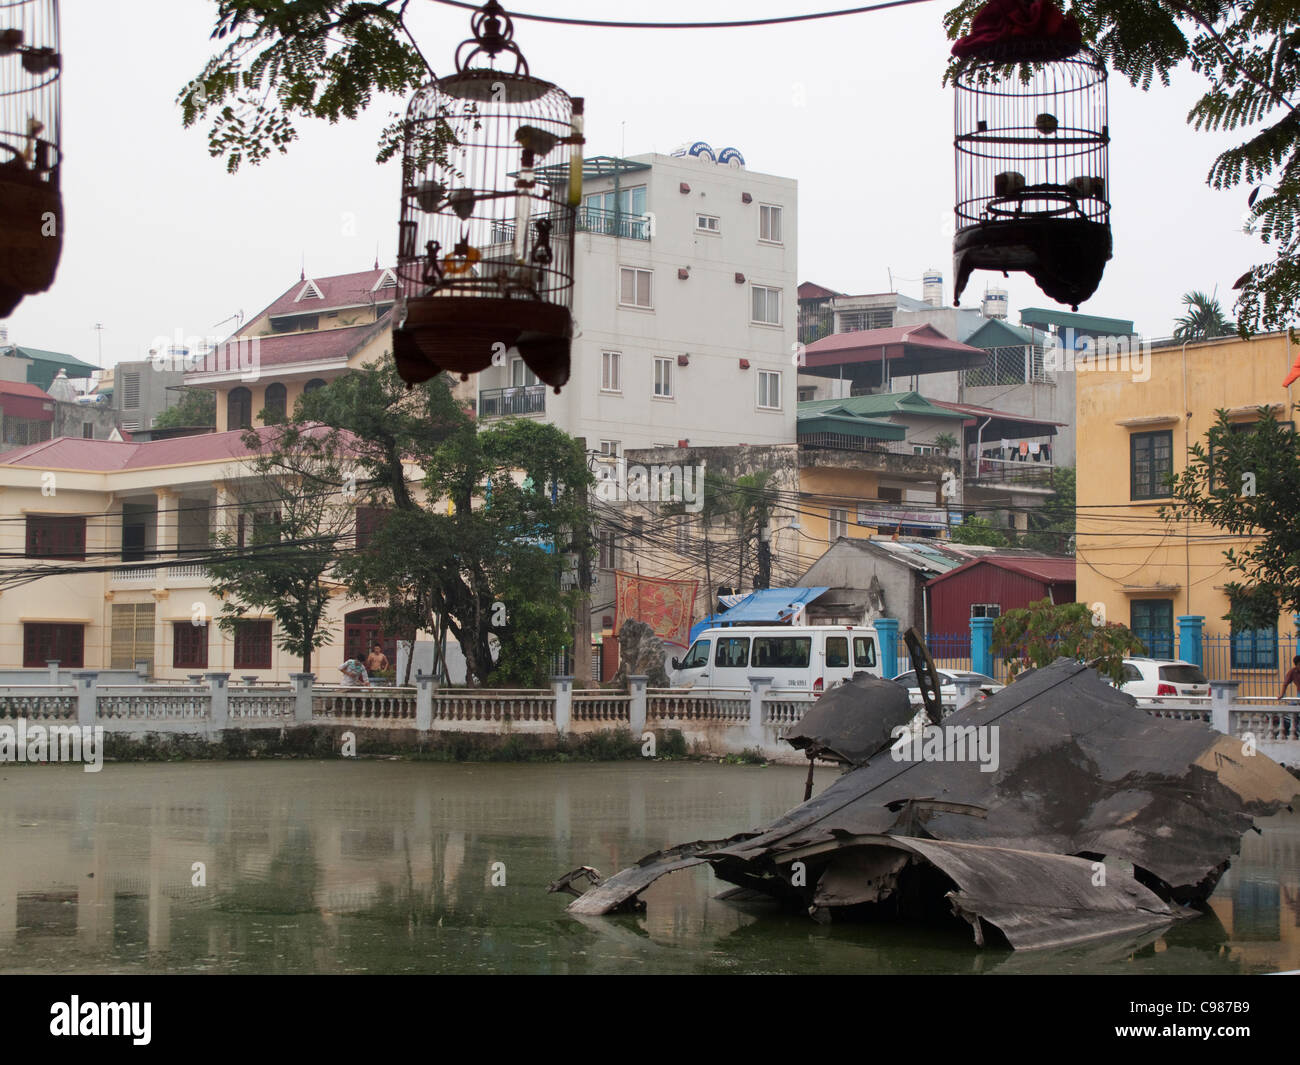 Les cages suspendues au-dessus de B52 bomber épave dans Huu Tiep lake, Hanoi, Vietnam Banque D'Images